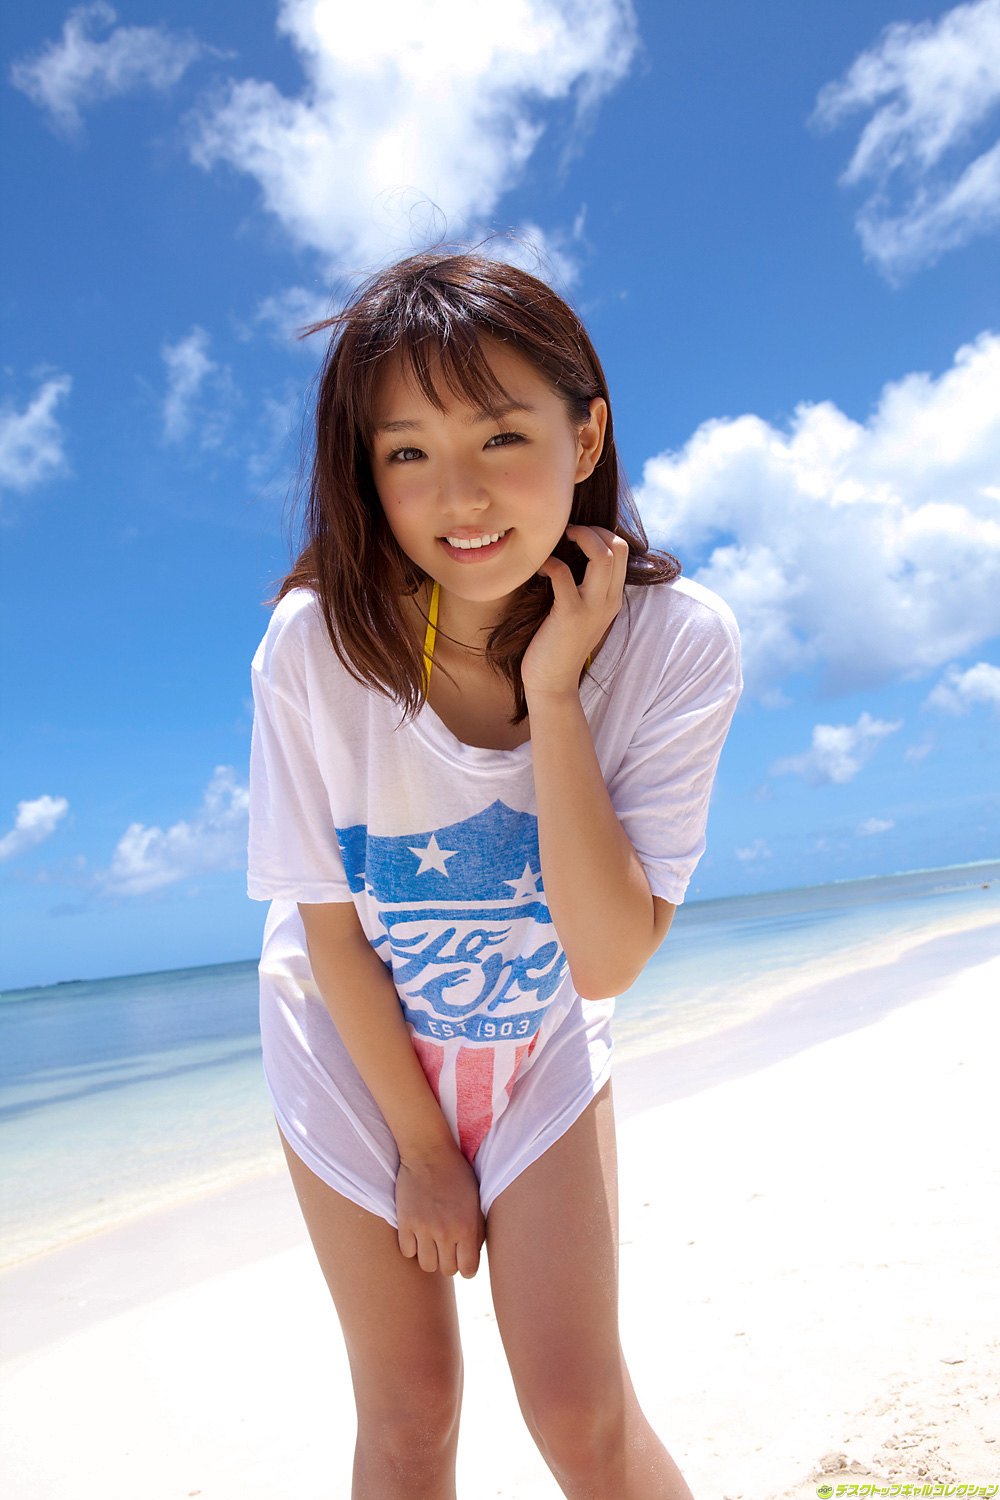 People 1000x1500 Japanese women short hair brunette Ai Shinozaki beach long shirt smiling Japanese Asian women T-shirt